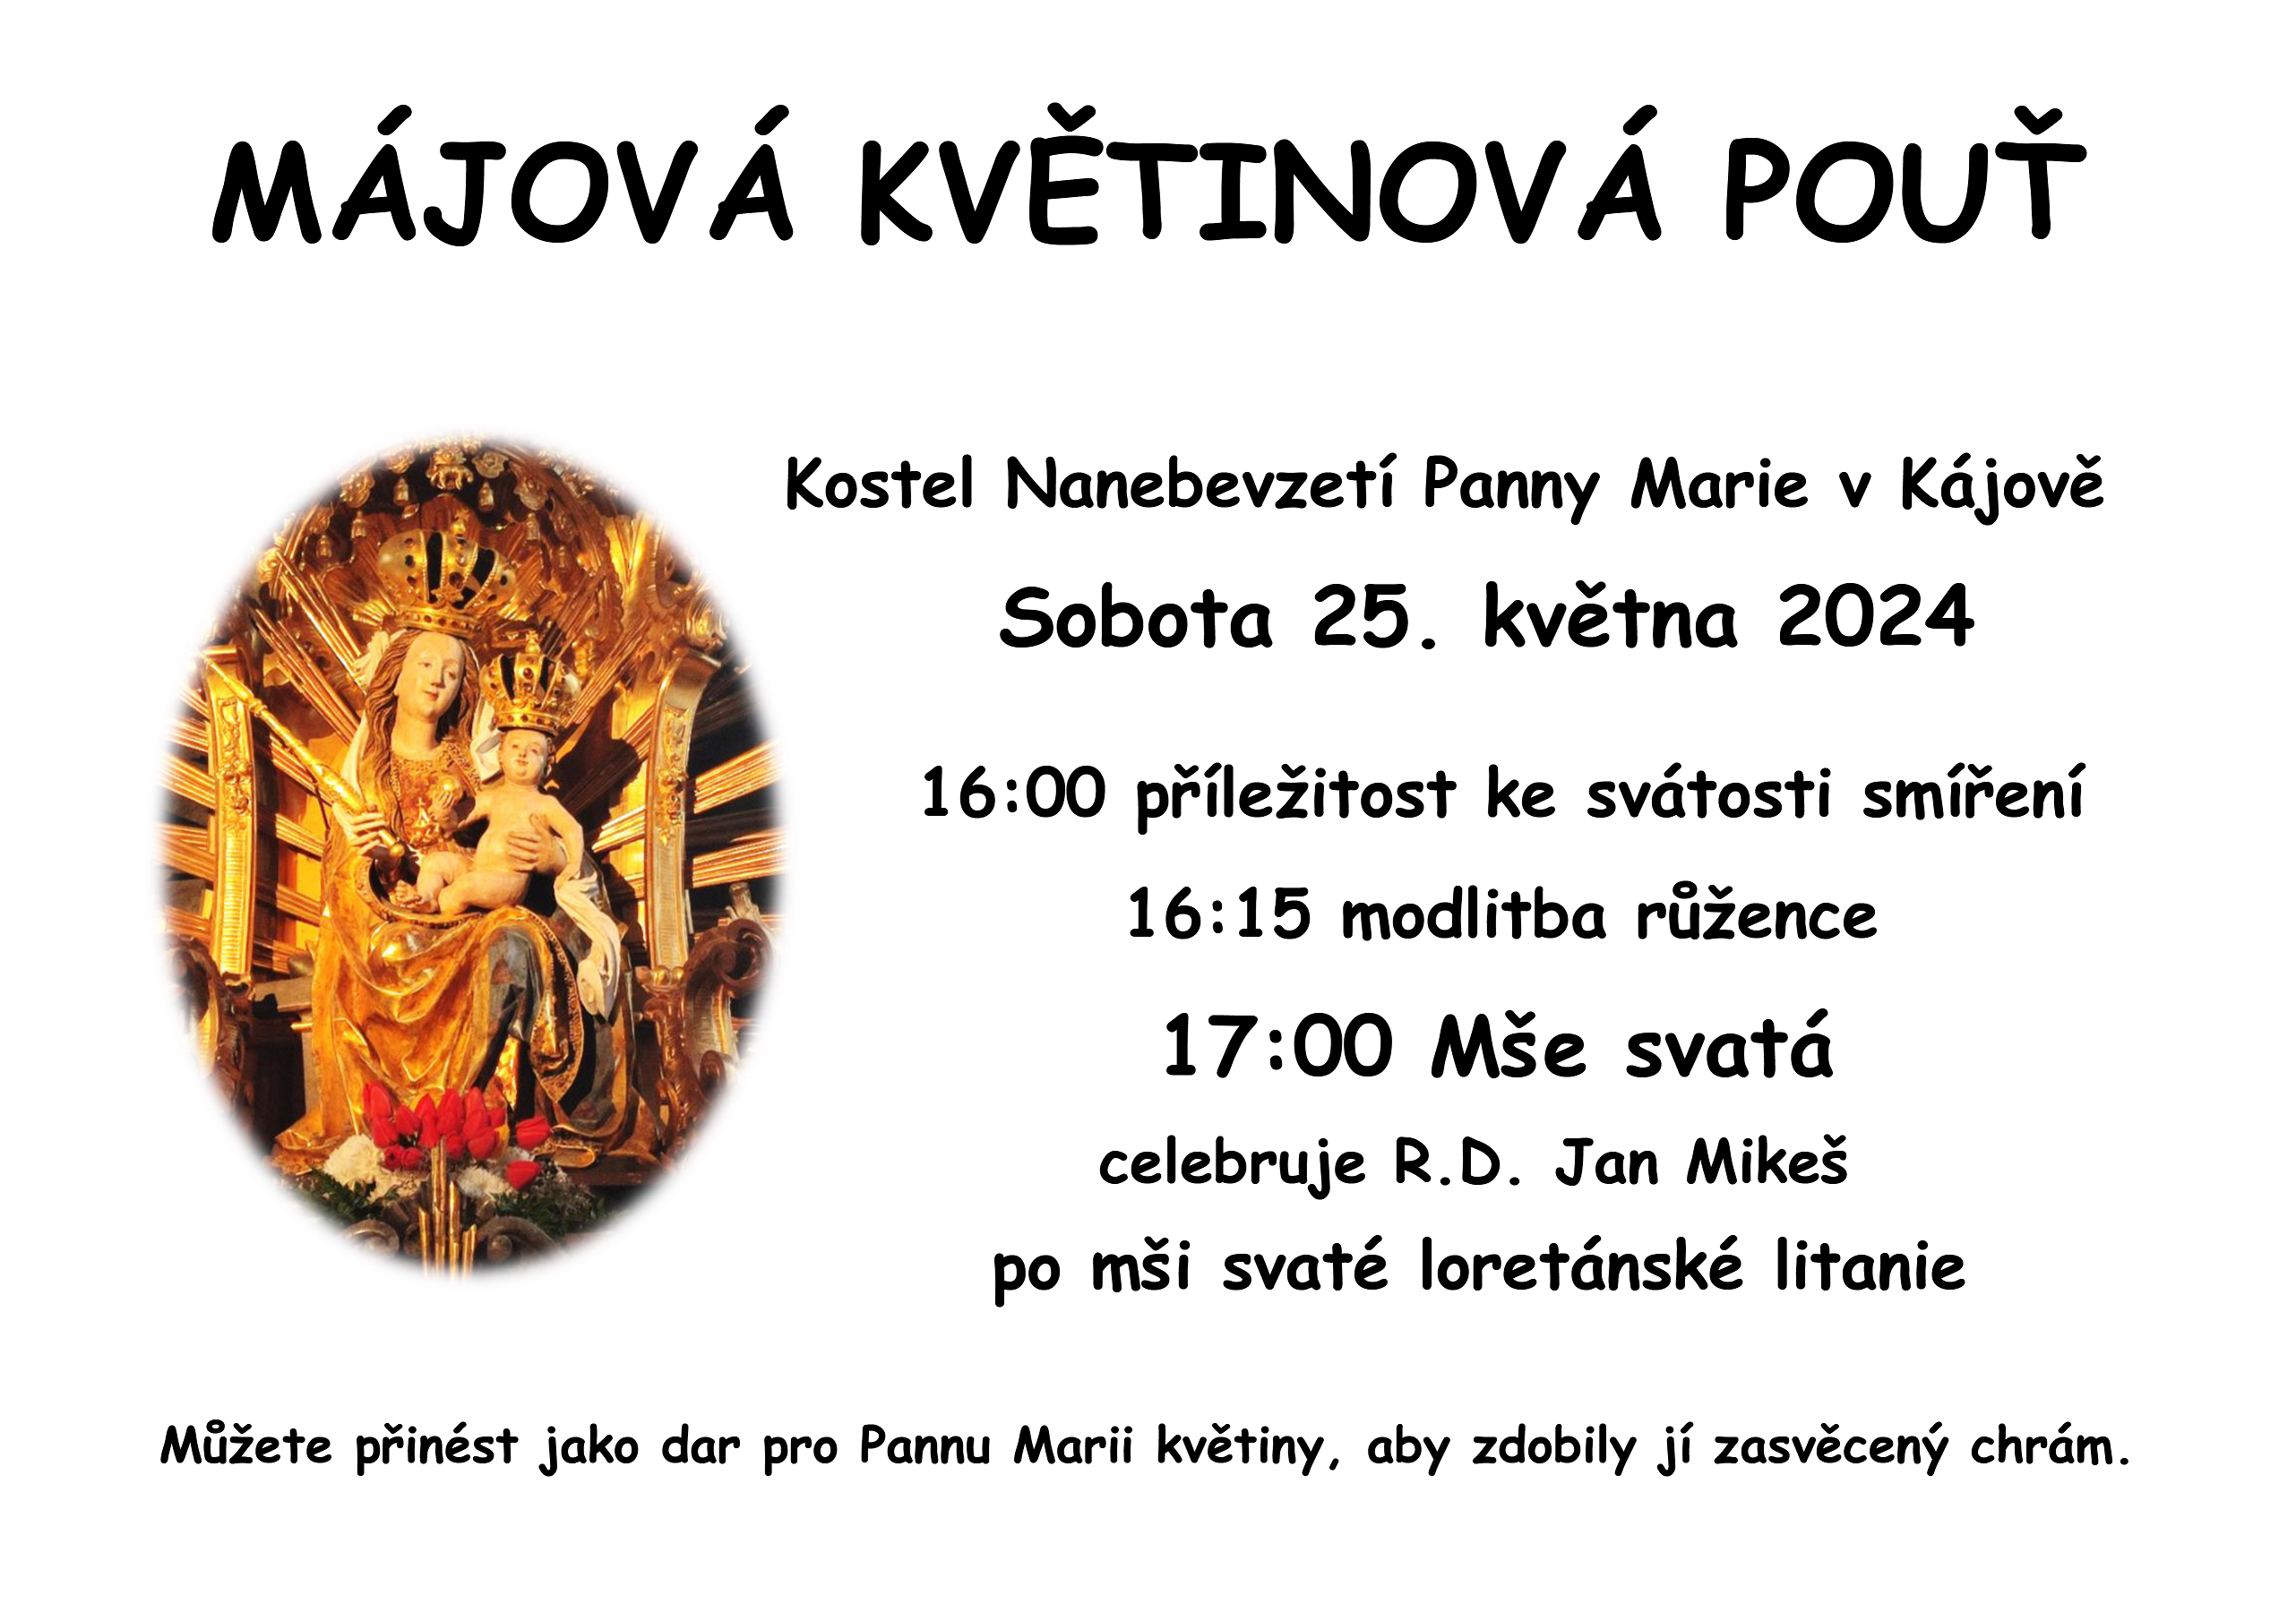 majova_kajovska_pout_2024.png